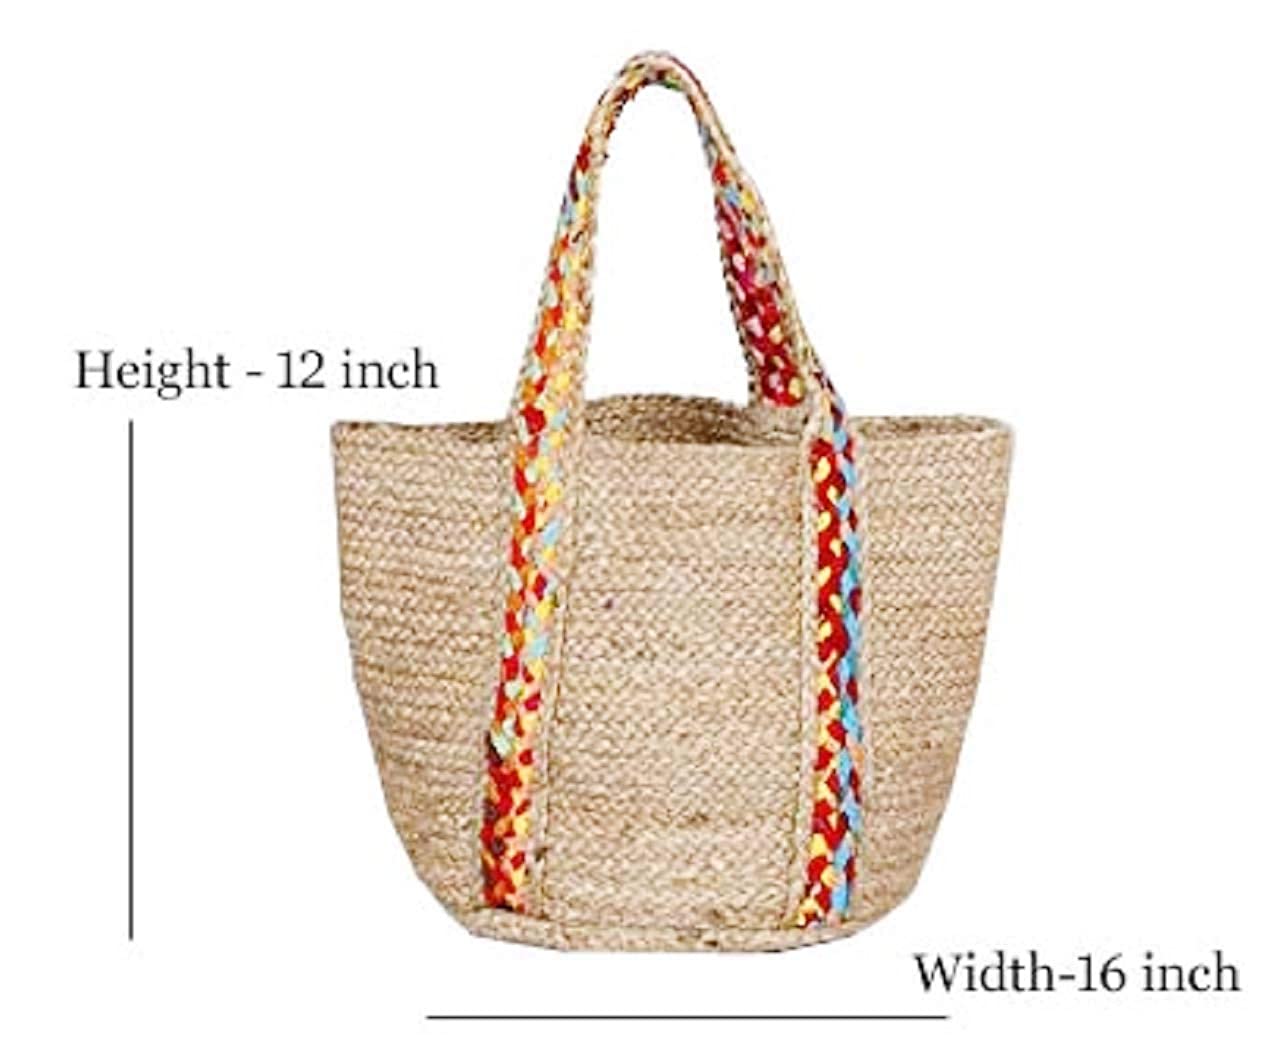 White Jute braided Handbags - With Flower Design Handmade Jute Bag